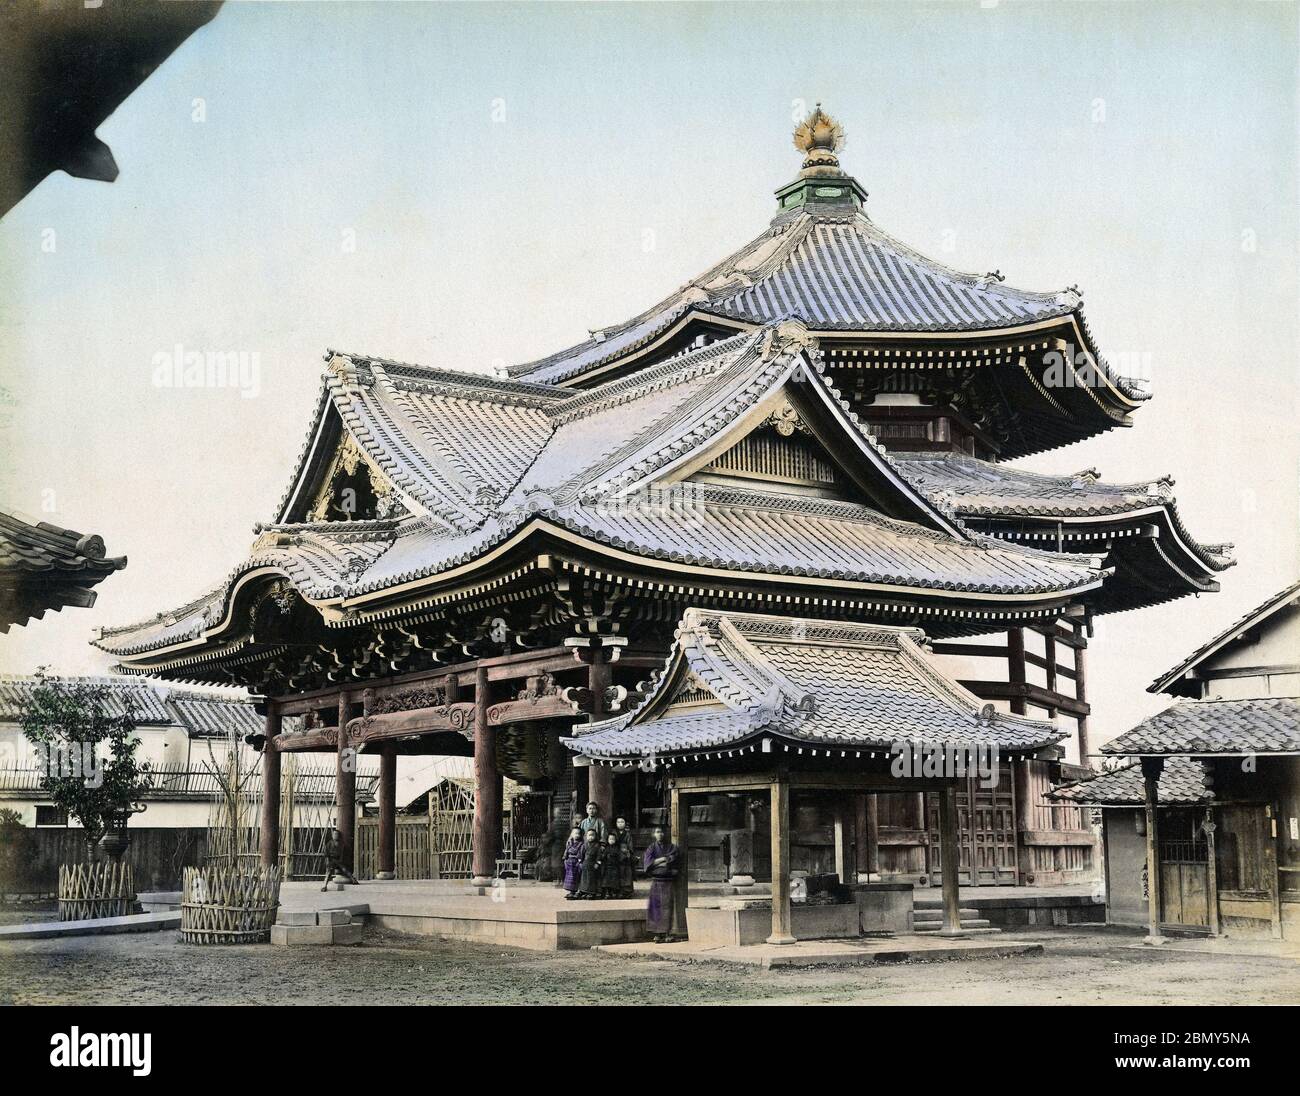 [ 1890er Jahre Japan - Rokkaku-do Tempel, Kyoto ] - Rokkaku-do Tempel (六角堂) in Kyoto. Der offizielle Name des buddhistischen Tempels ist Choho-ji (頂法寺). Der Legende nach wurde der Tempel von Prinz Shotoku errichtet. Es wird angenommen, dass sie in der frühen Heian-Zeit (794 bis 1185) gegründet worden. Der Tempel ist Teil der Saigoku Kannon Pilgerfahrt (西国三十三所), einer Pilgerfahrt von 33 buddhistischen Tempeln in der Kansai-Region Japans. Vintage Albumin Foto des 19. Jahrhunderts. Stockfoto